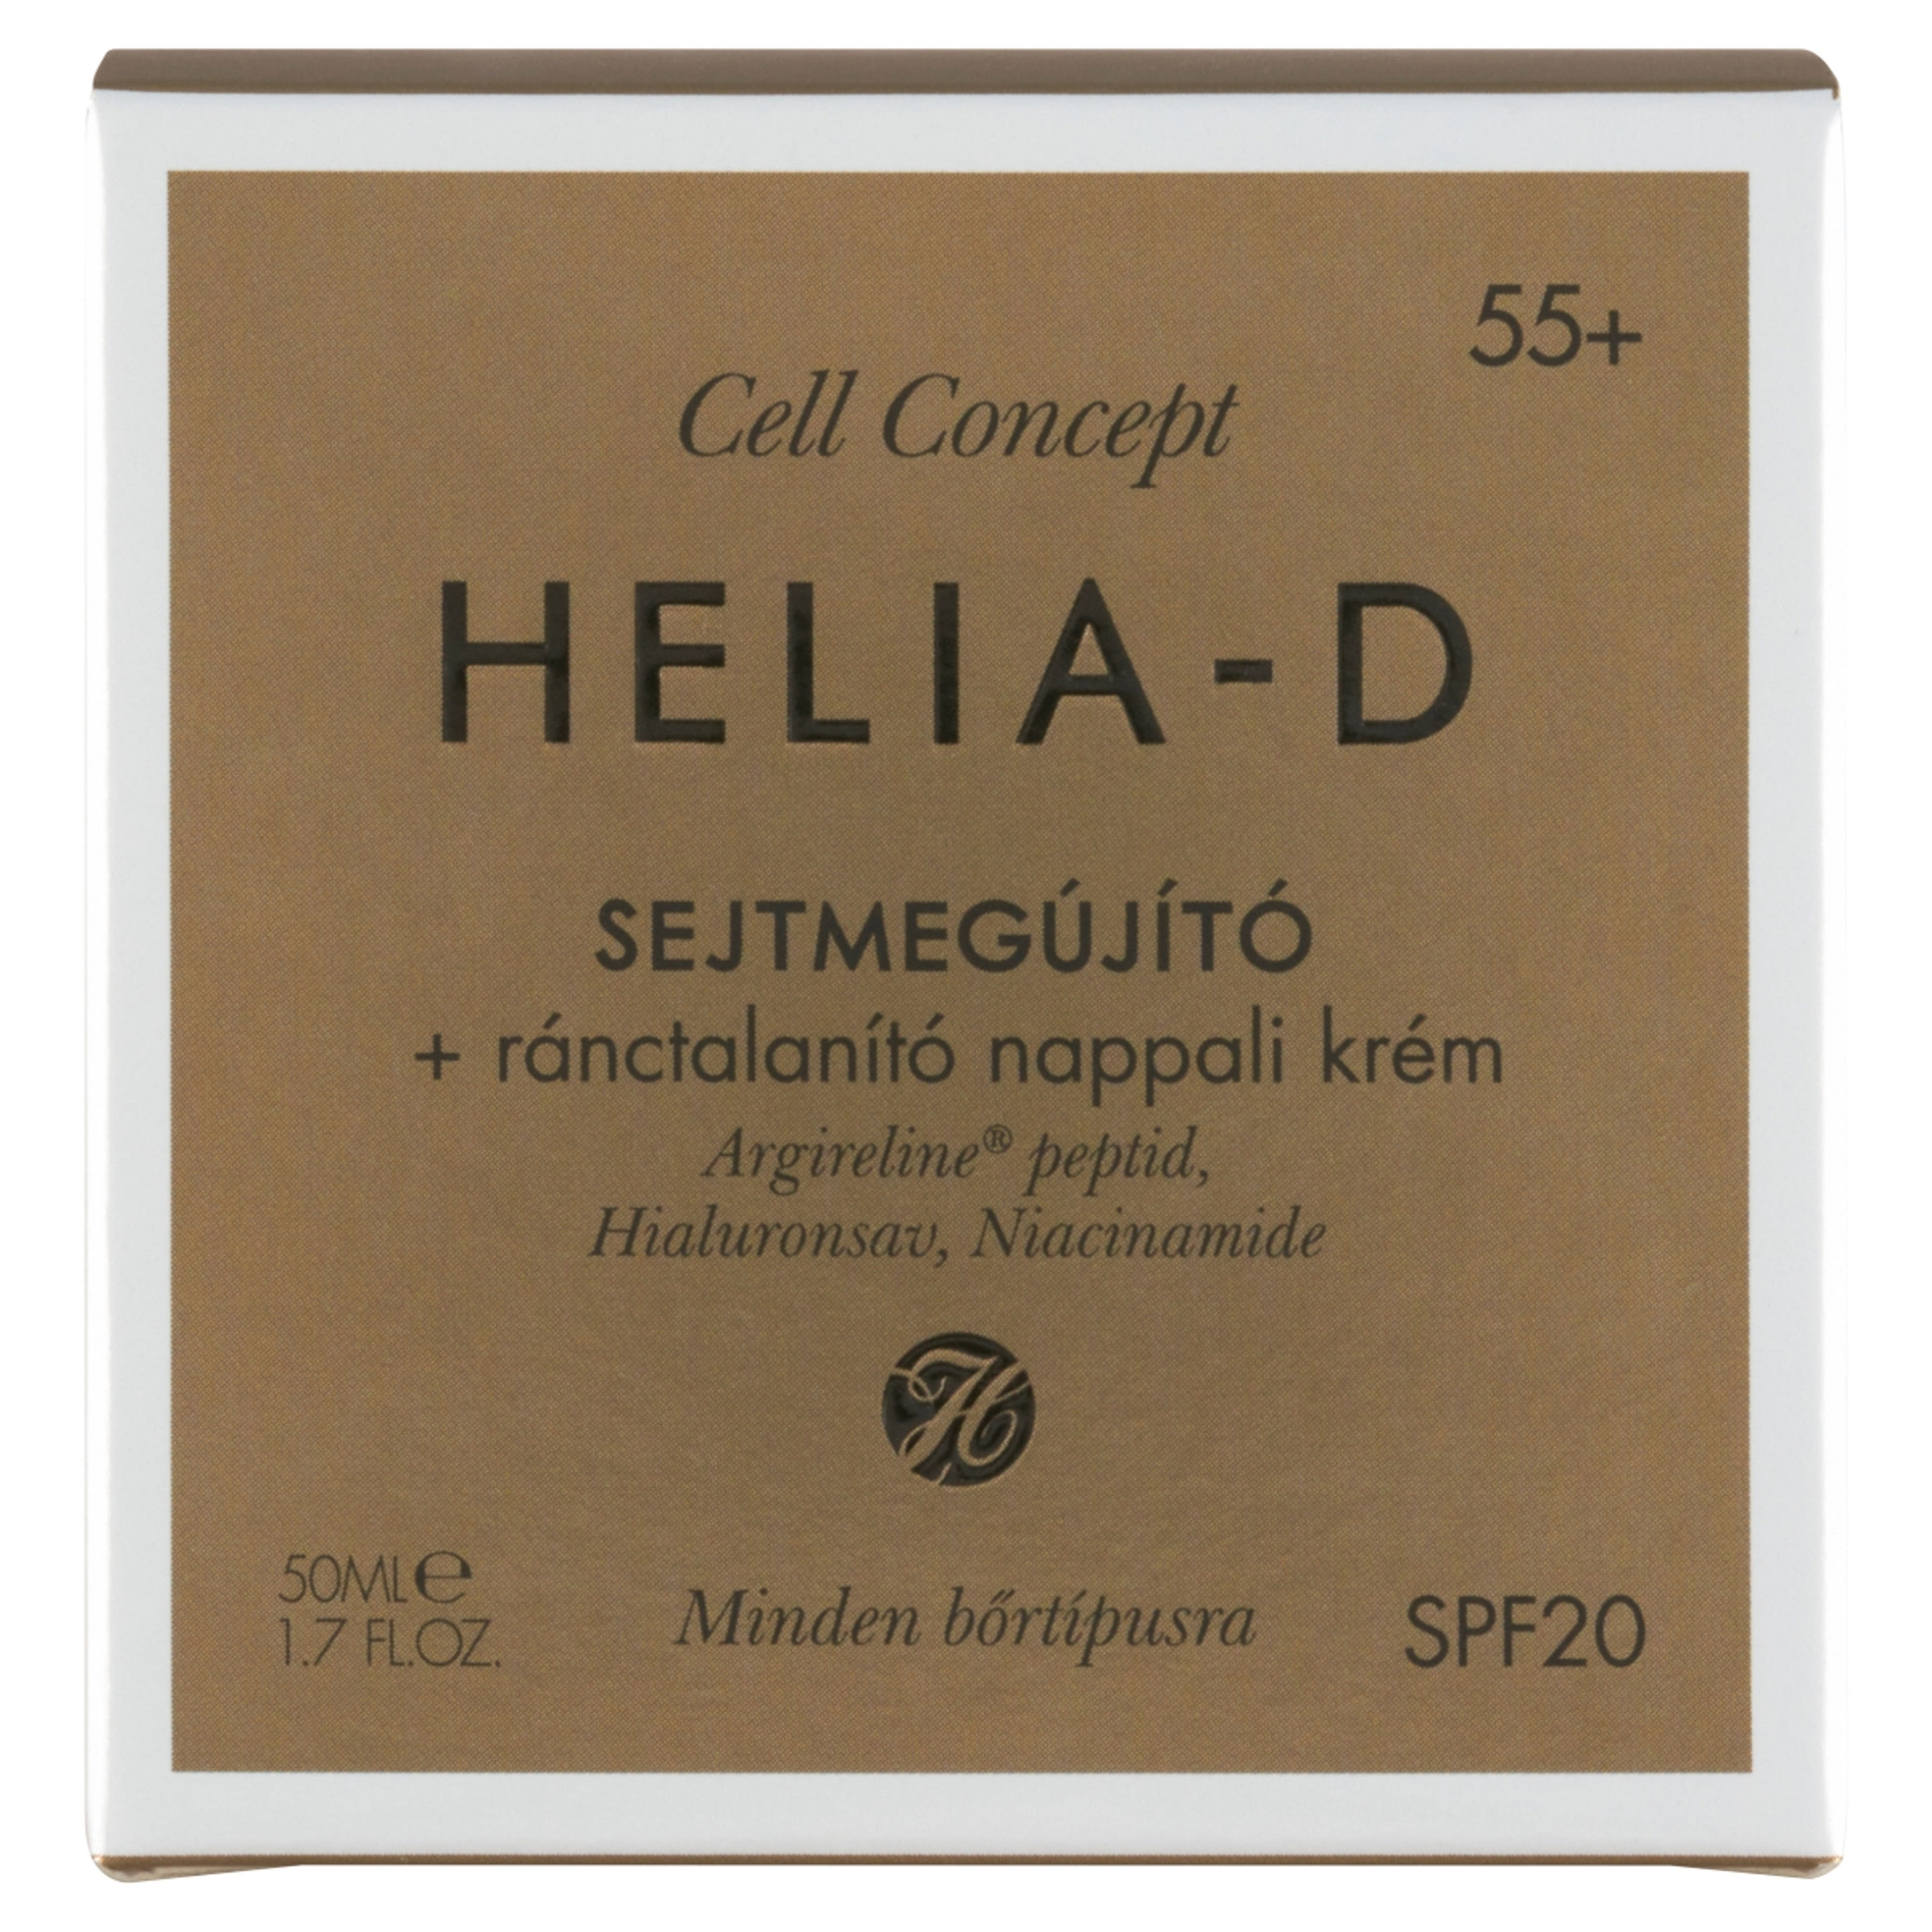 Helia-D Cell Concept sejtmegújító ránctalanító nappali krém 55+ - 50 ml